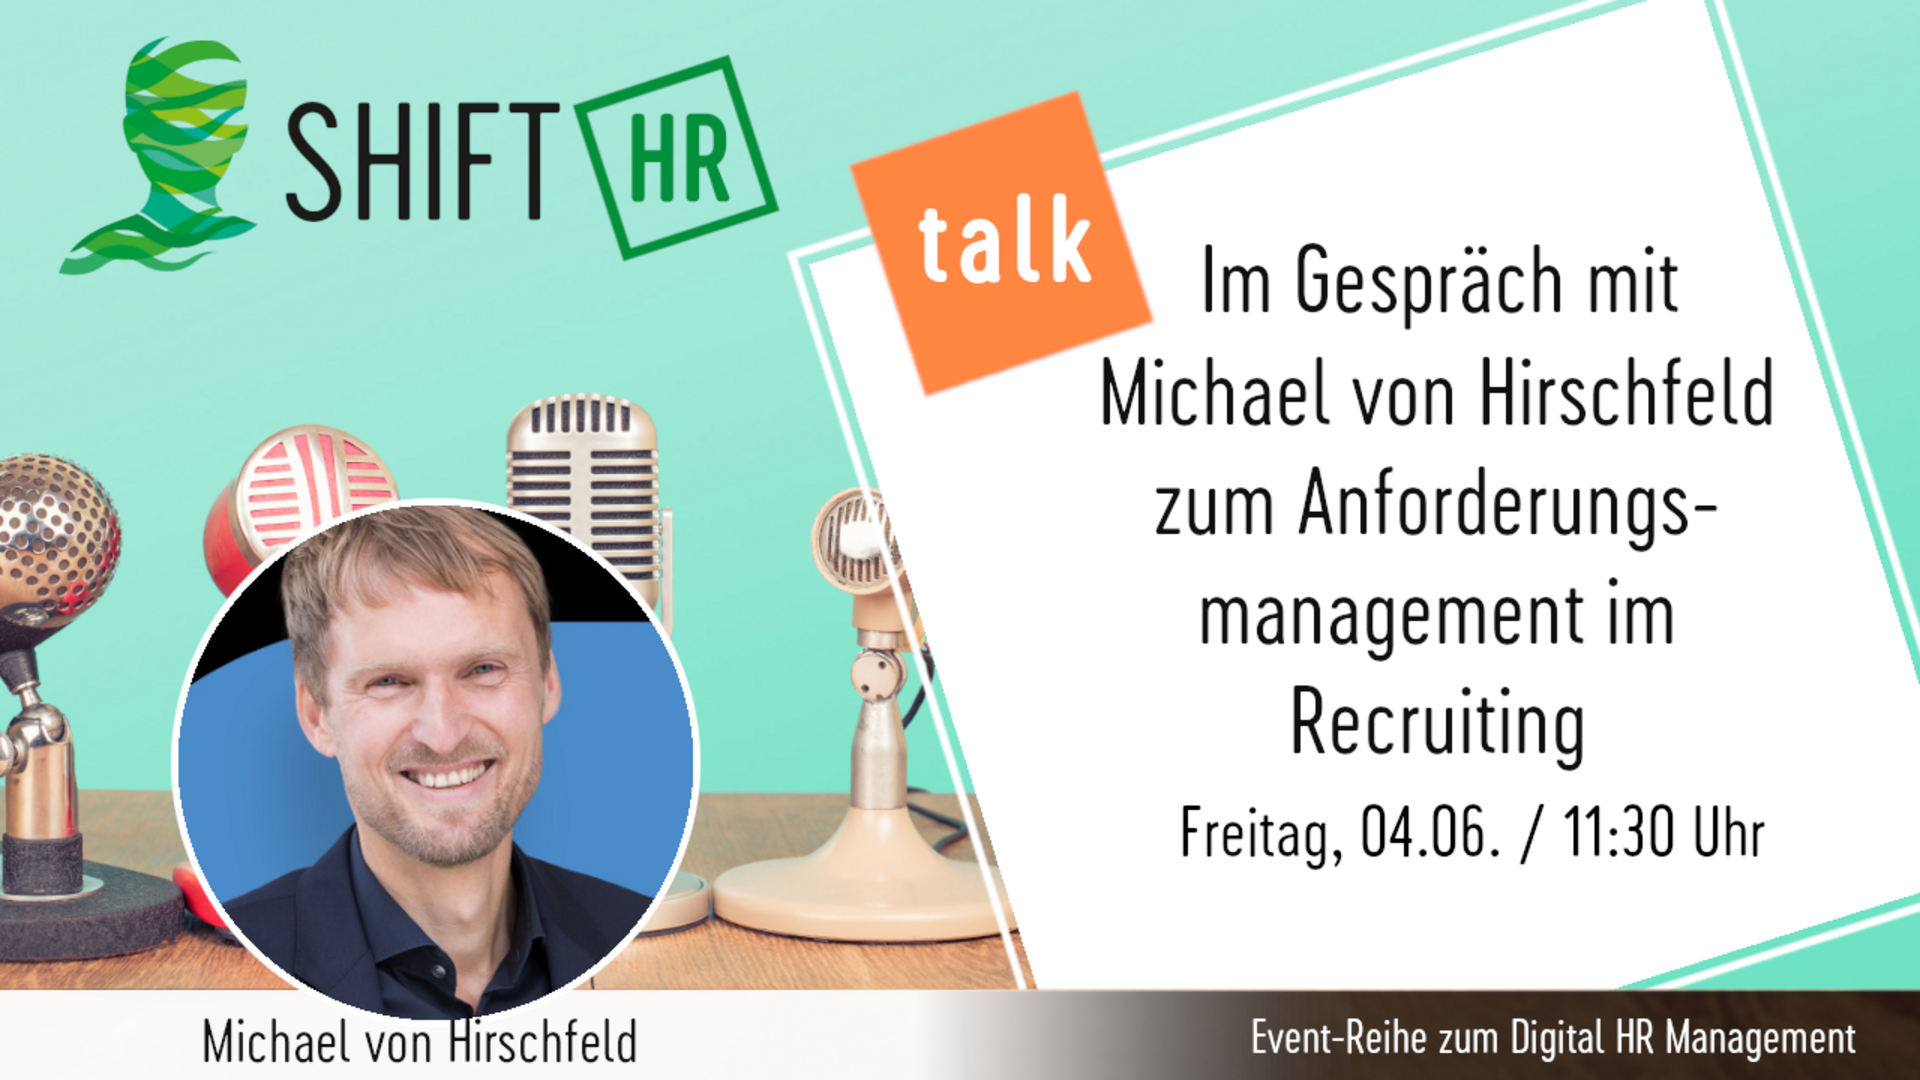 Im Gespräch mit Michael von Hirschfeld zum Anforderungsmanagement im Personalwesen bei der Zusammenarbeit von Hiring Manager und Recruiting